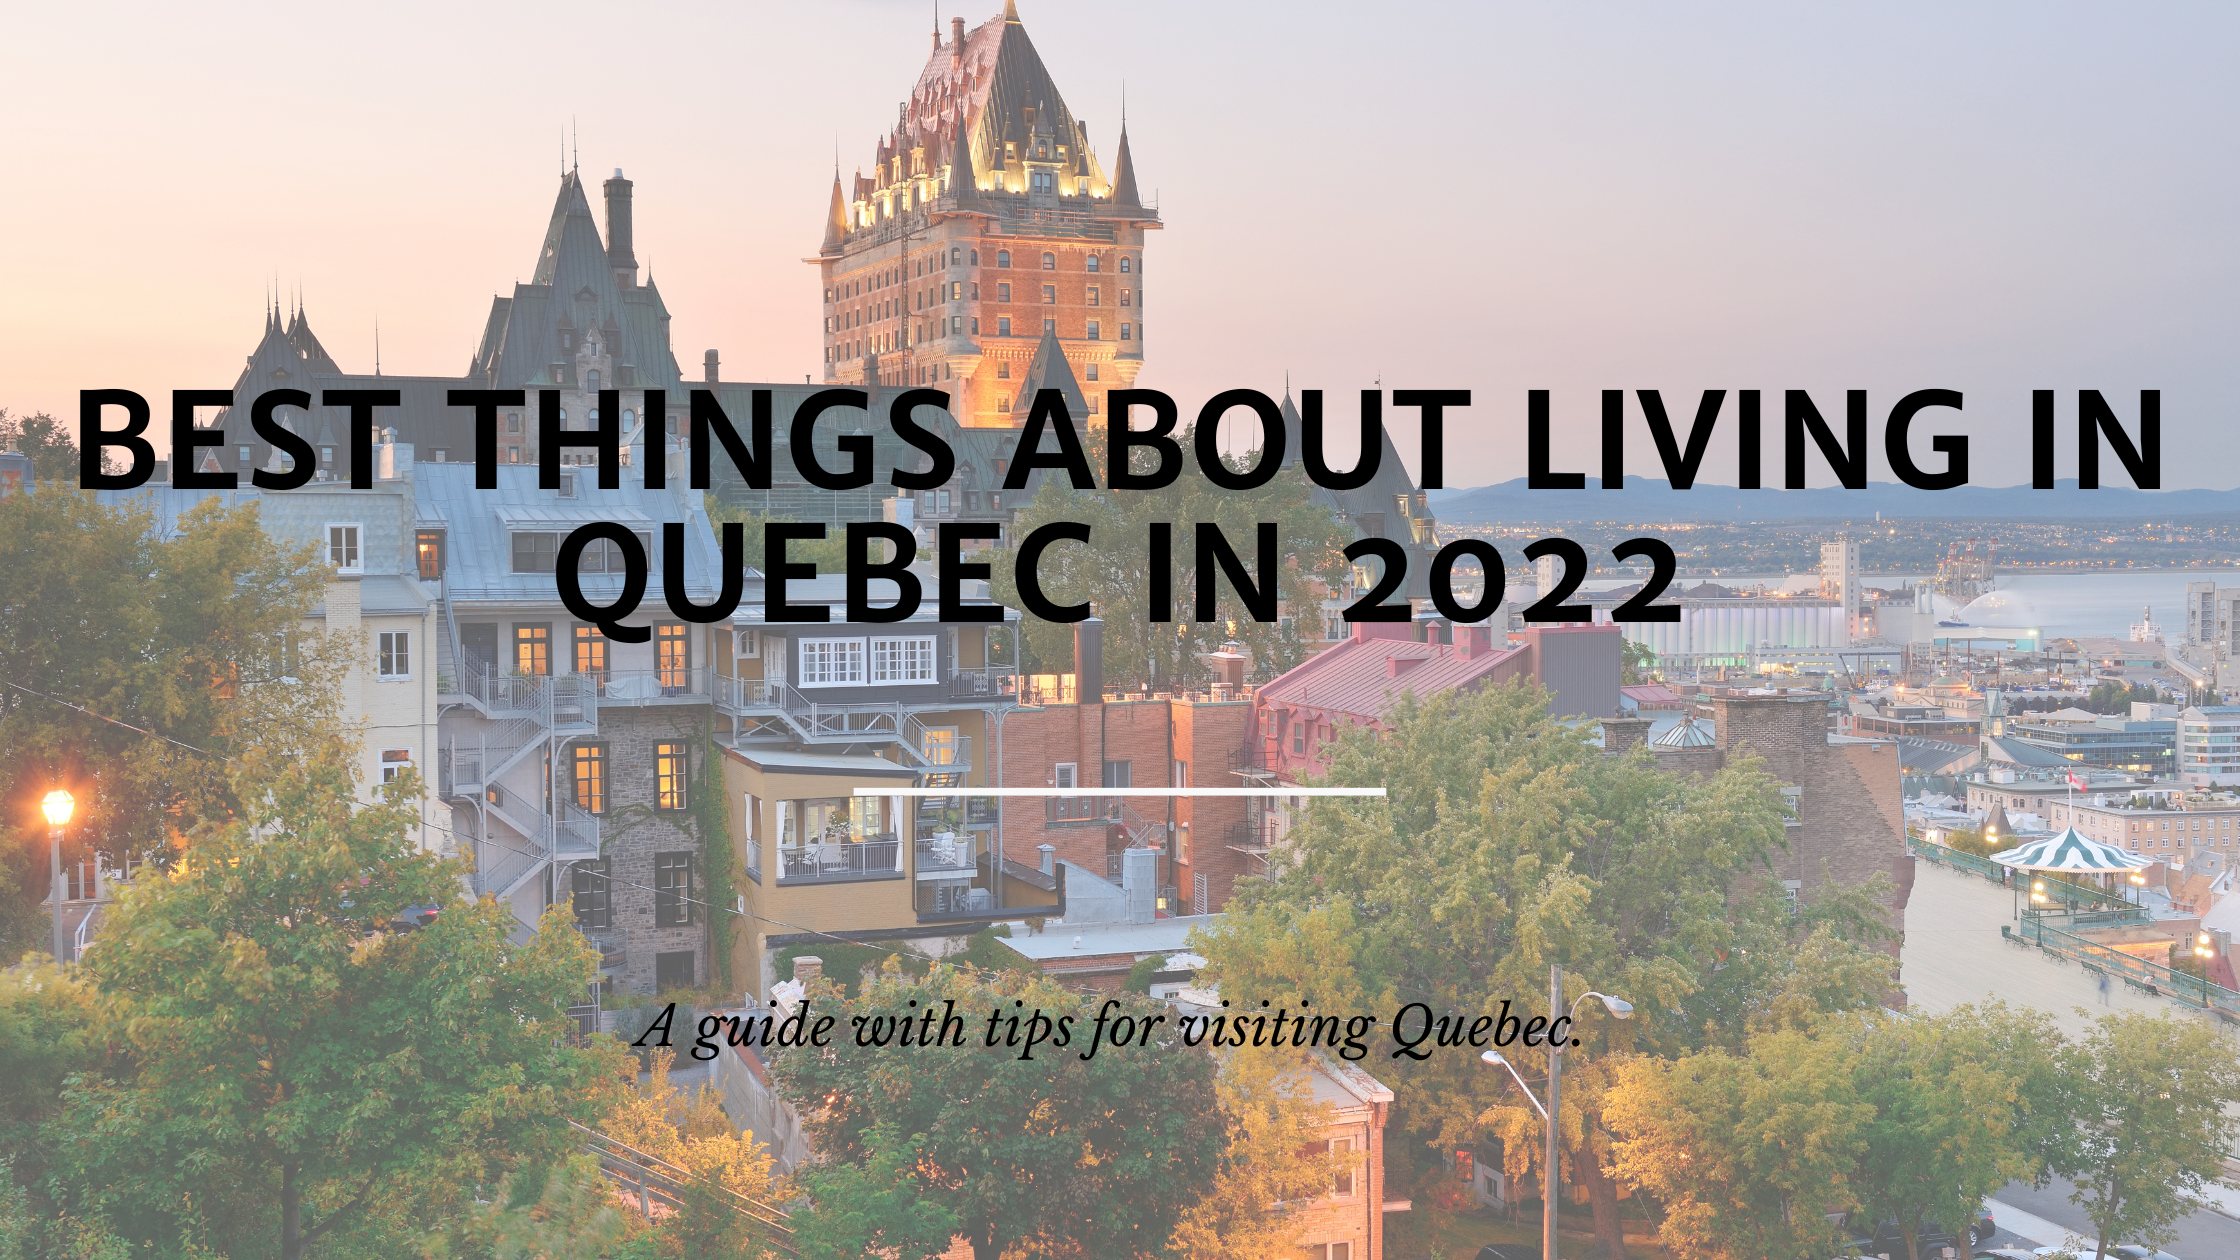 Living in Quebec in 2022